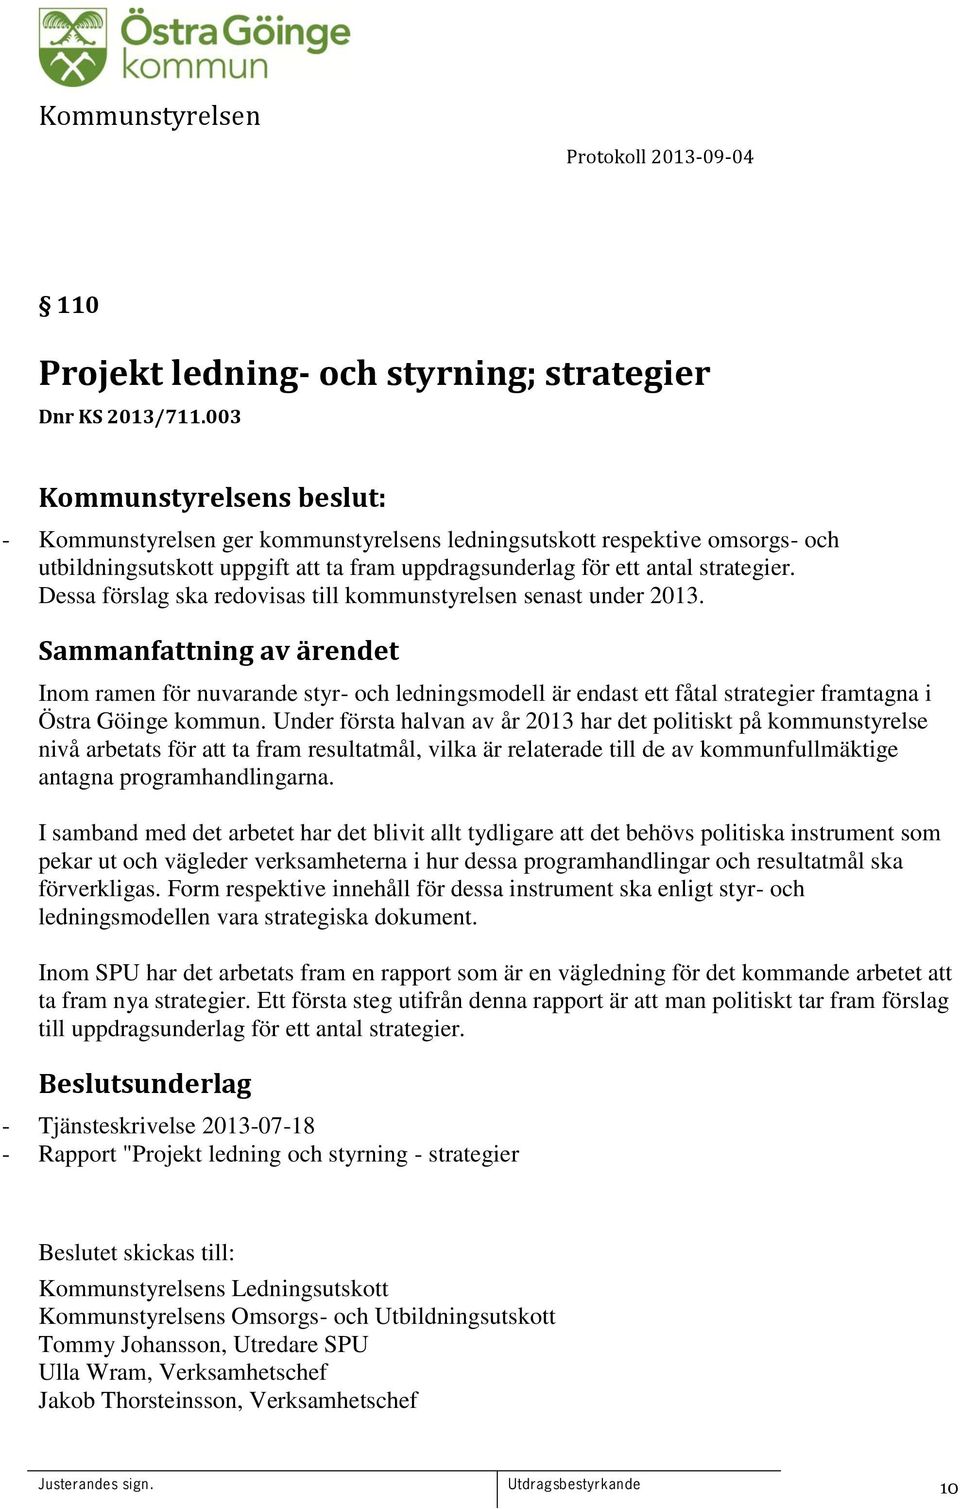 Dessa förslag ska redovisas till kommunstyrelsen senast under 2013. Inom ramen för nuvarande styr- och ledningsmodell är endast ett fåtal strategier framtagna i Östra Göinge kommun.